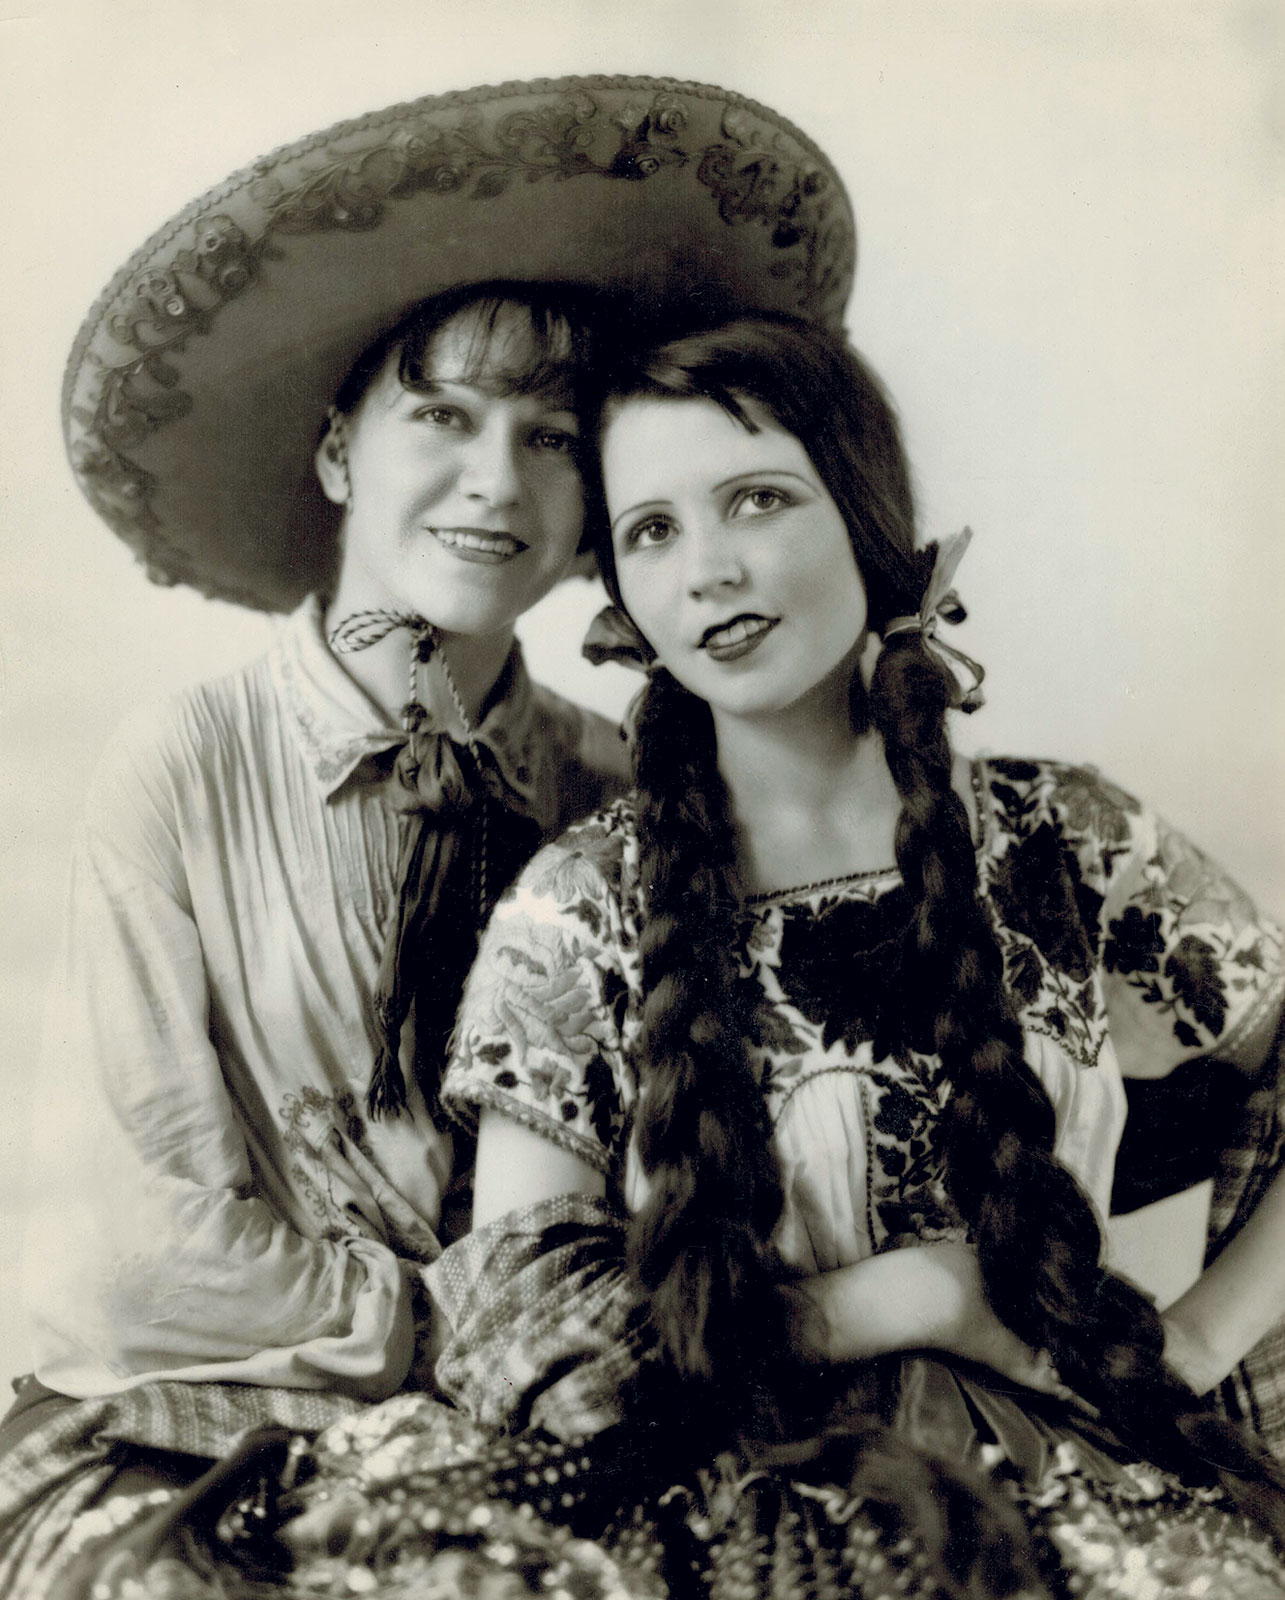 Gloria como china poblana y Nellie de charro, 1930. Cortesía Museo del Estanquillo